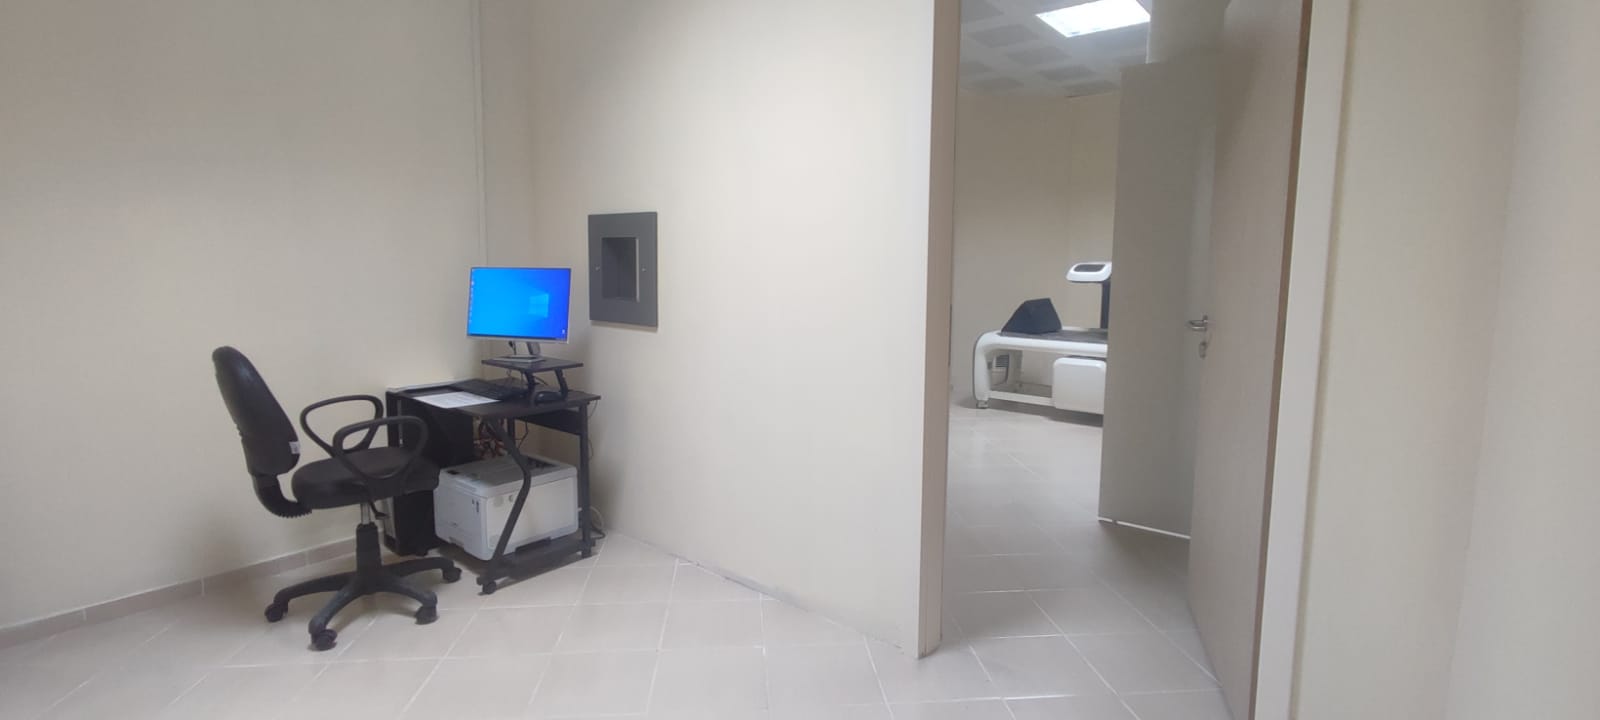 Bozkır Devlet Hastanesi'nde Kemikdansitometri Ünitesi hizmeti